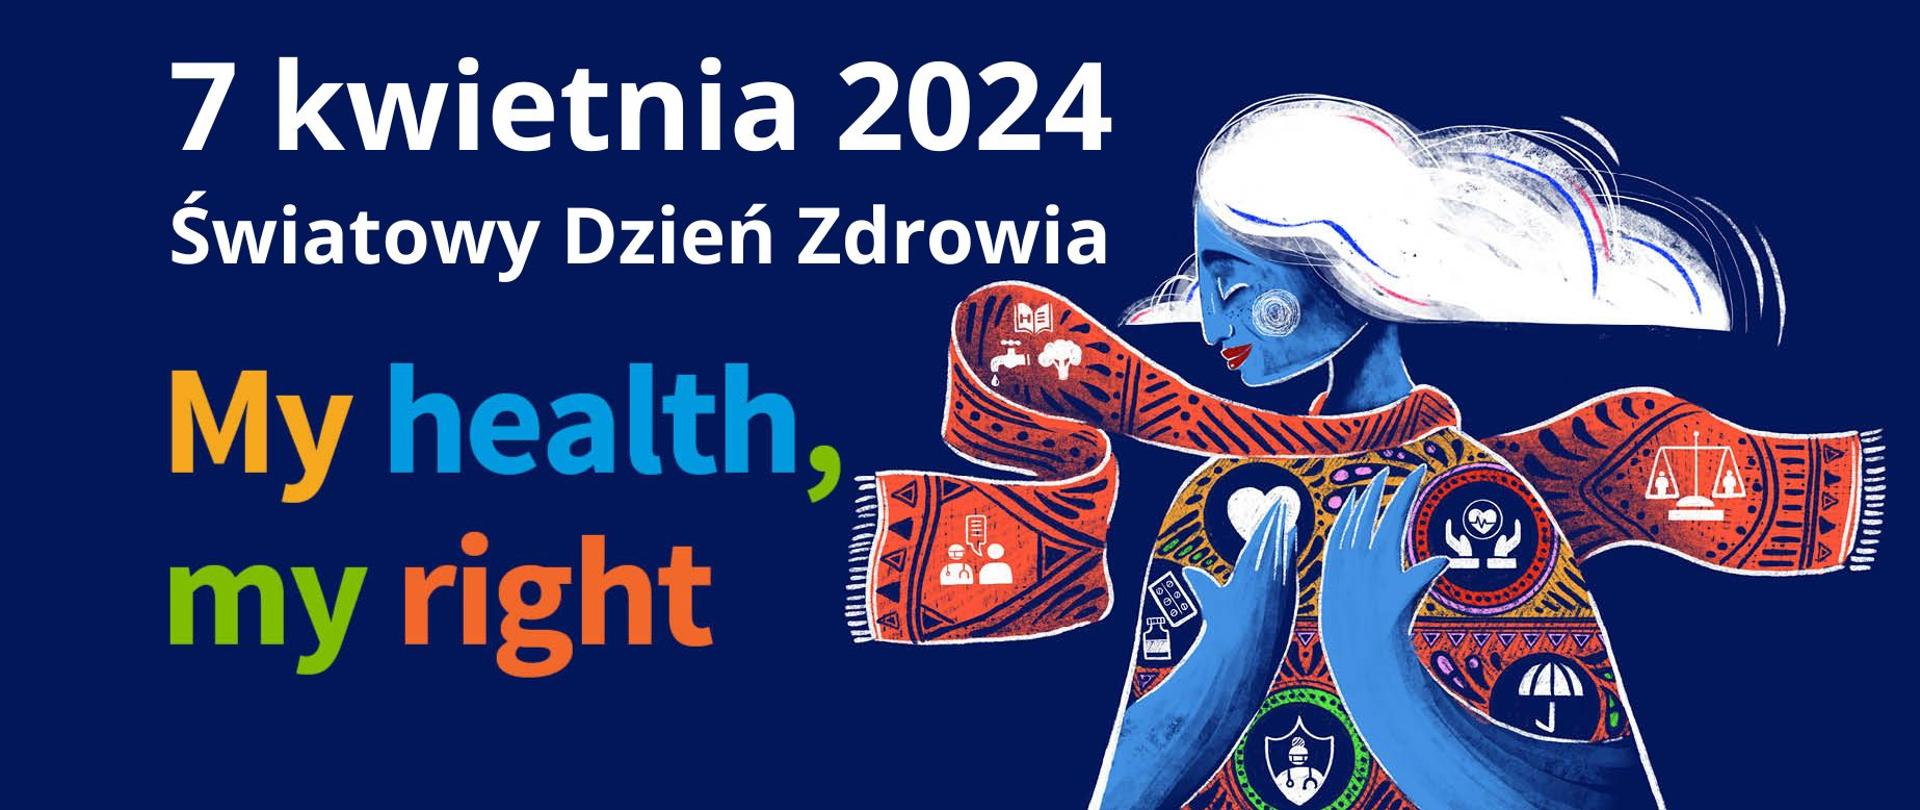 7 kwietnia 2024 - Światowy Dzień Zdrowia #MyHealthMyRight